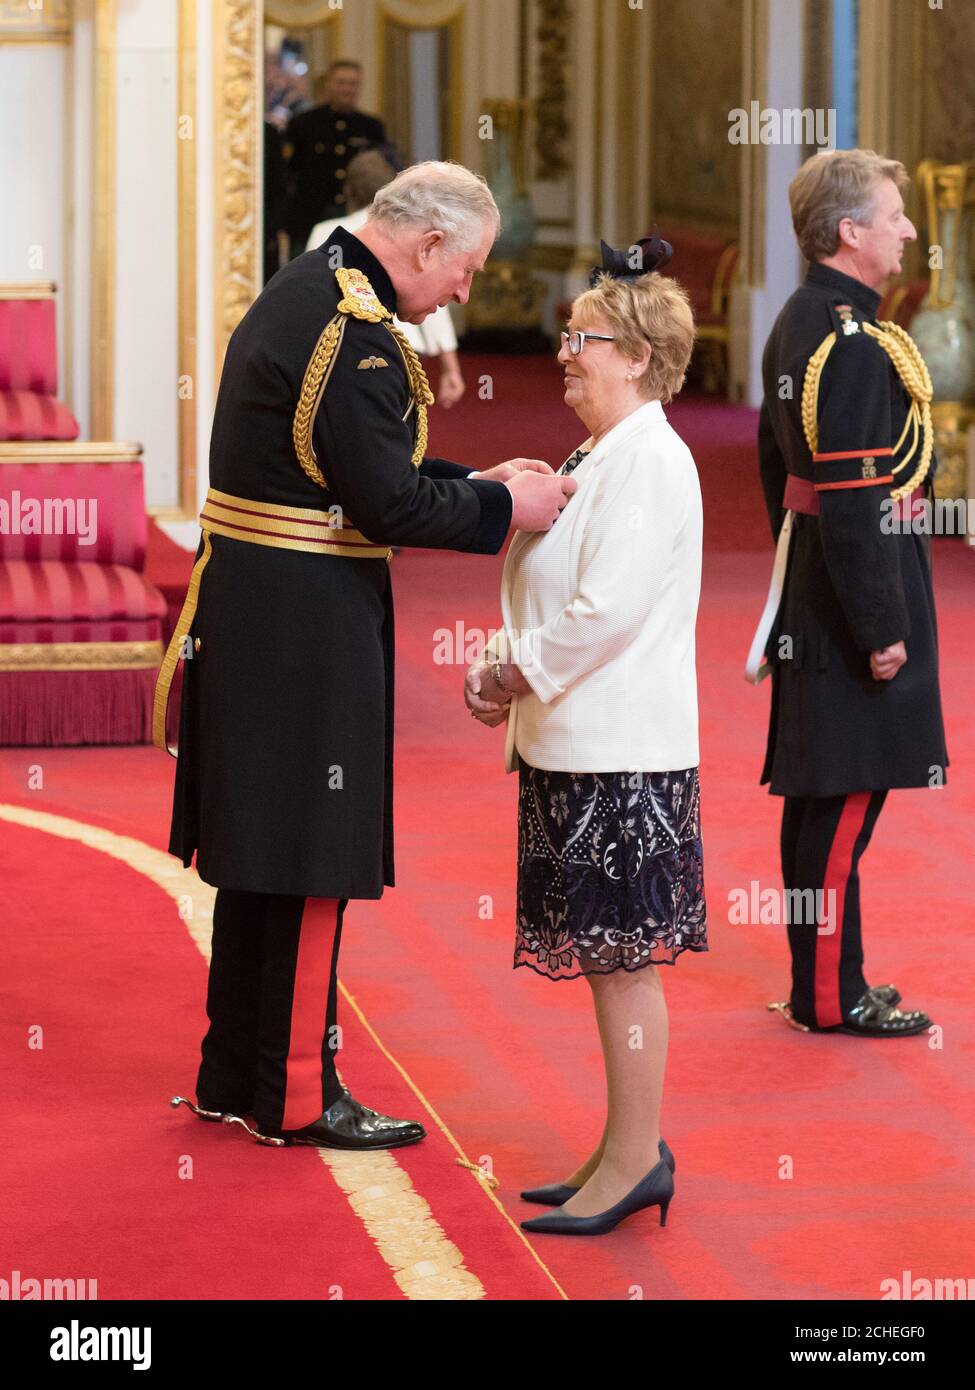 Mme Maureen Horton, de Sheffield, est faite de MBE (membre de l'ordre de l'Empire britannique) par le Prince de Galles à Buckingham Palace. Banque D'Images